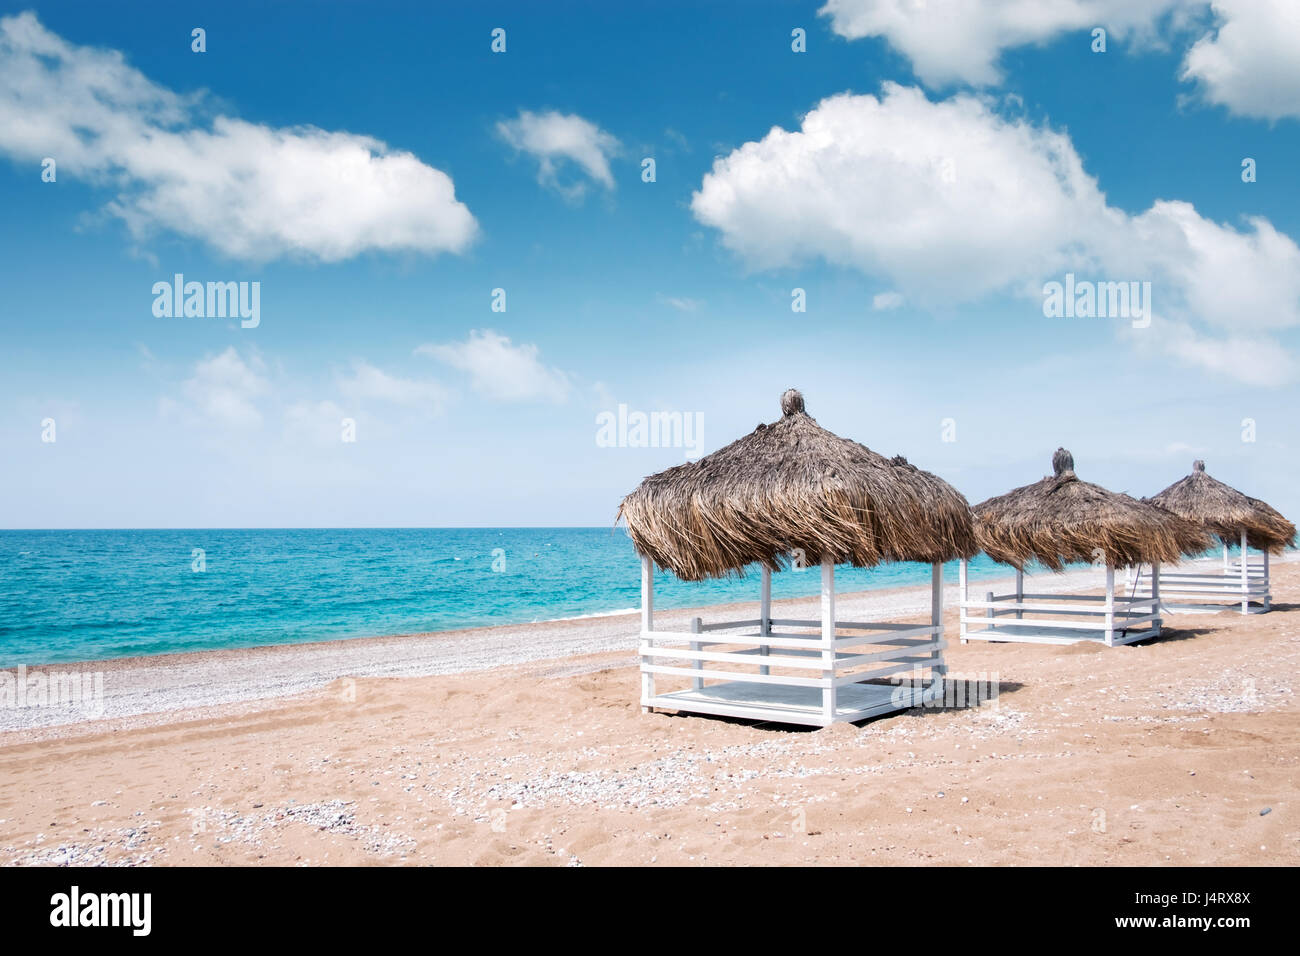 Tonnelles d'été sur la plage. Vue imprenable sur la mer méditerranée. Niches en bois blanc sur la journée ensoleillée. Ciel bleu et nuages moelleux Banque D'Images